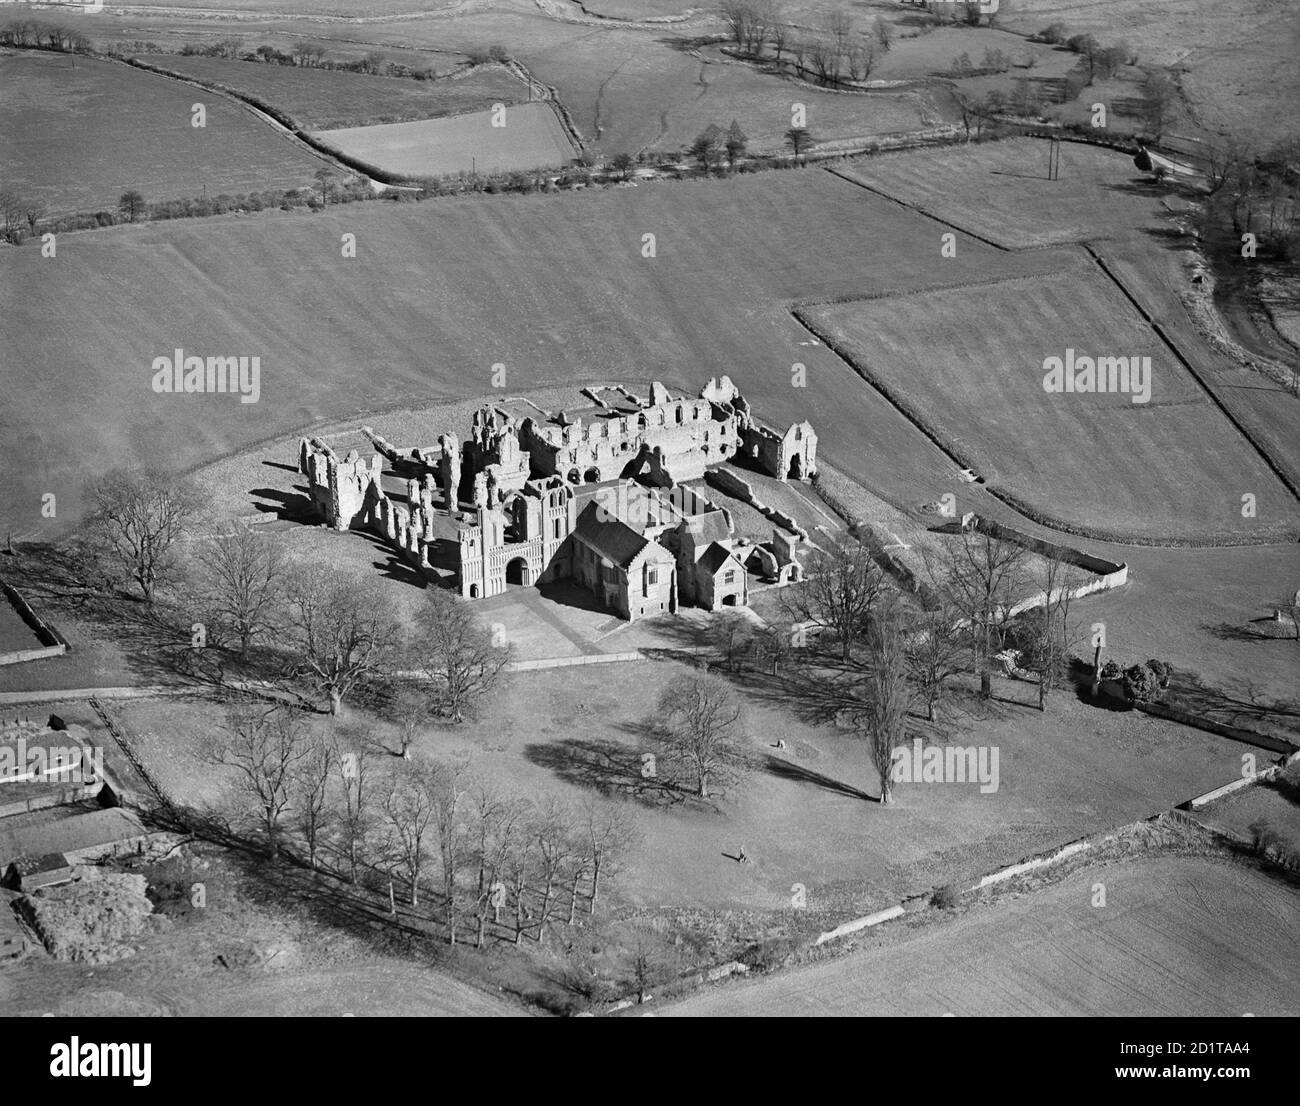 CASTELLO ACRO PRIORATO, NORFOLK. Vista aerea delle rovine del Priorato. Fotografata da Aeropictorial nell'aprile 1946. Aerofilms Collection (vedi link). Foto Stock